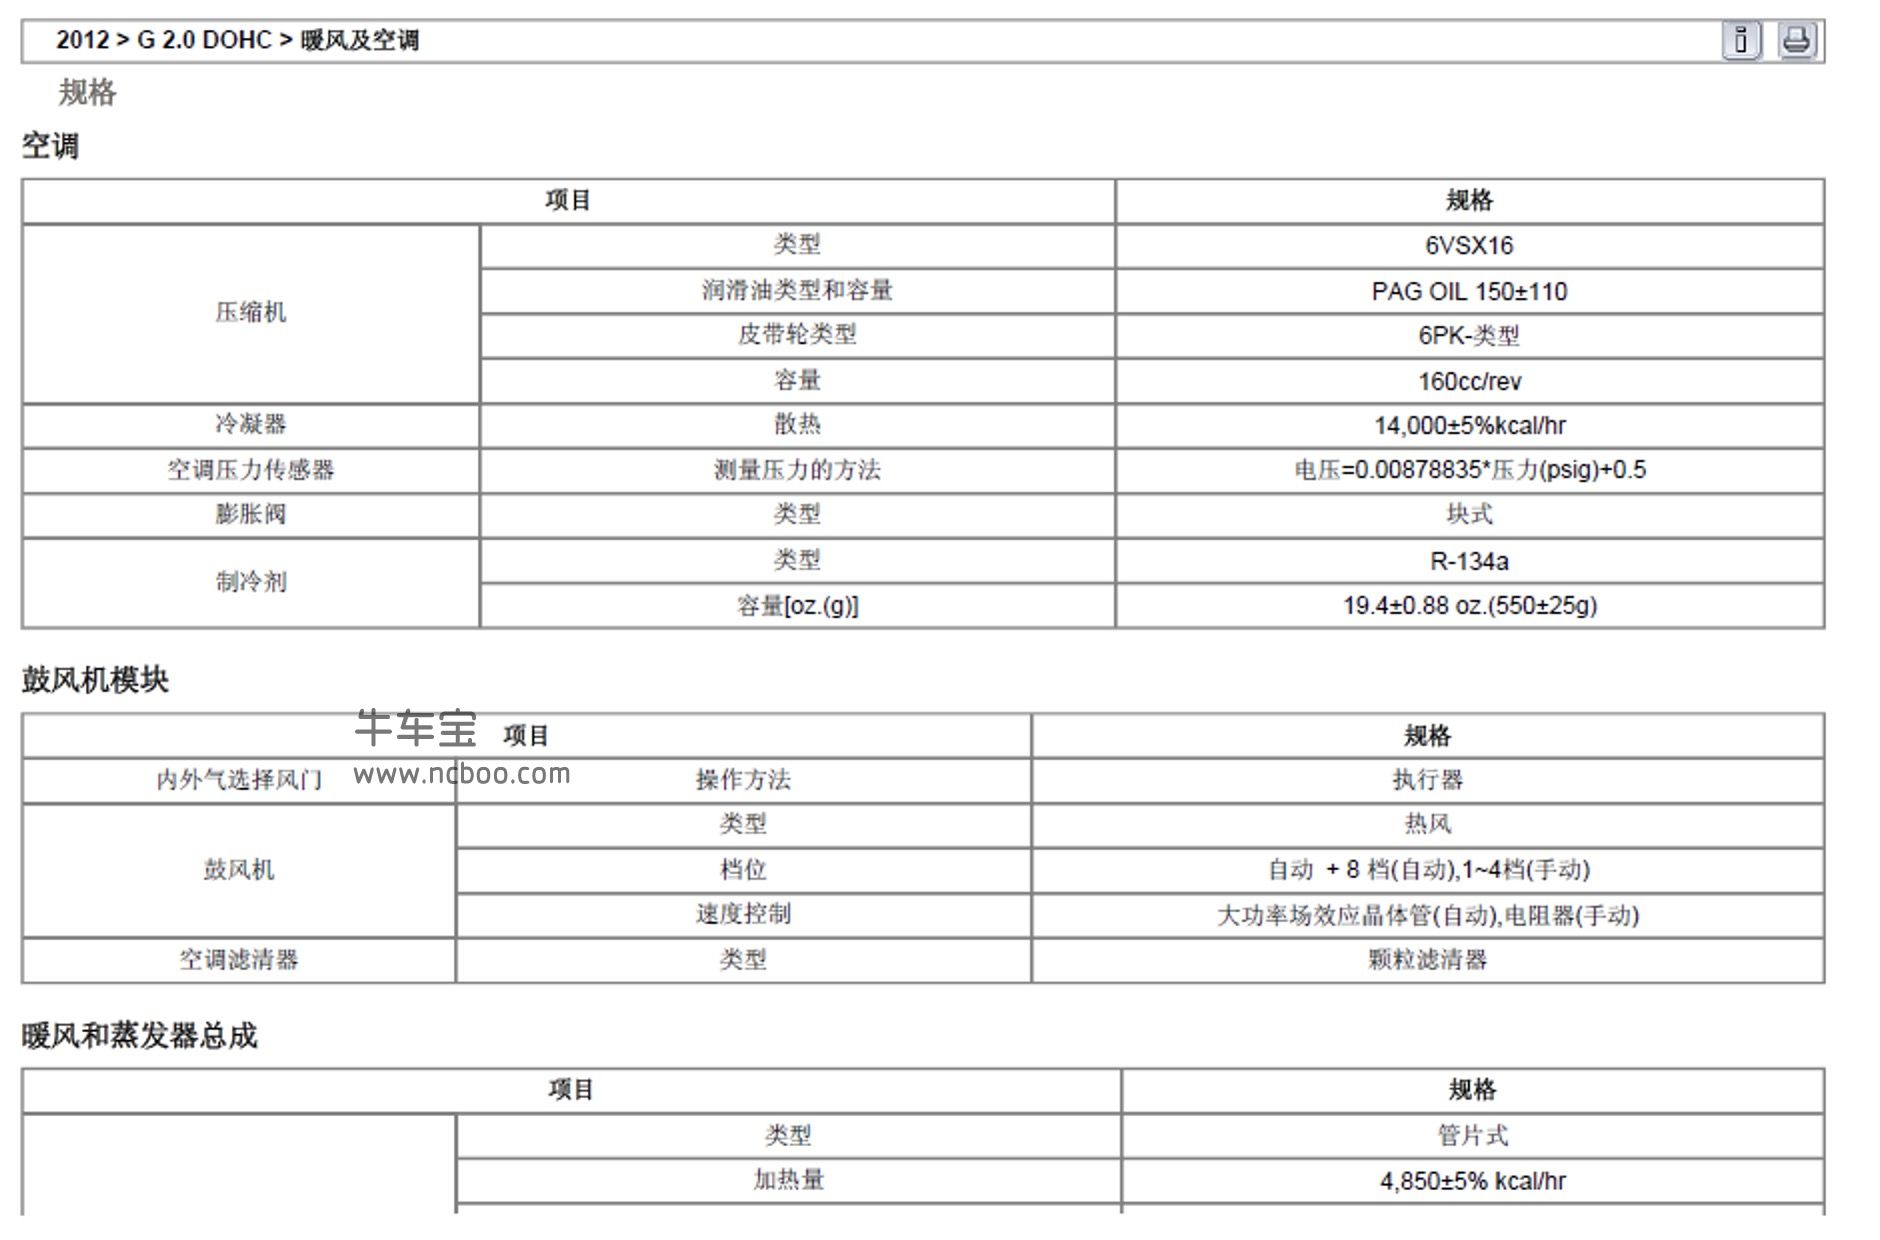 2011款北京现代索纳塔2.0,2.4L原厂维修手册和电路图资料